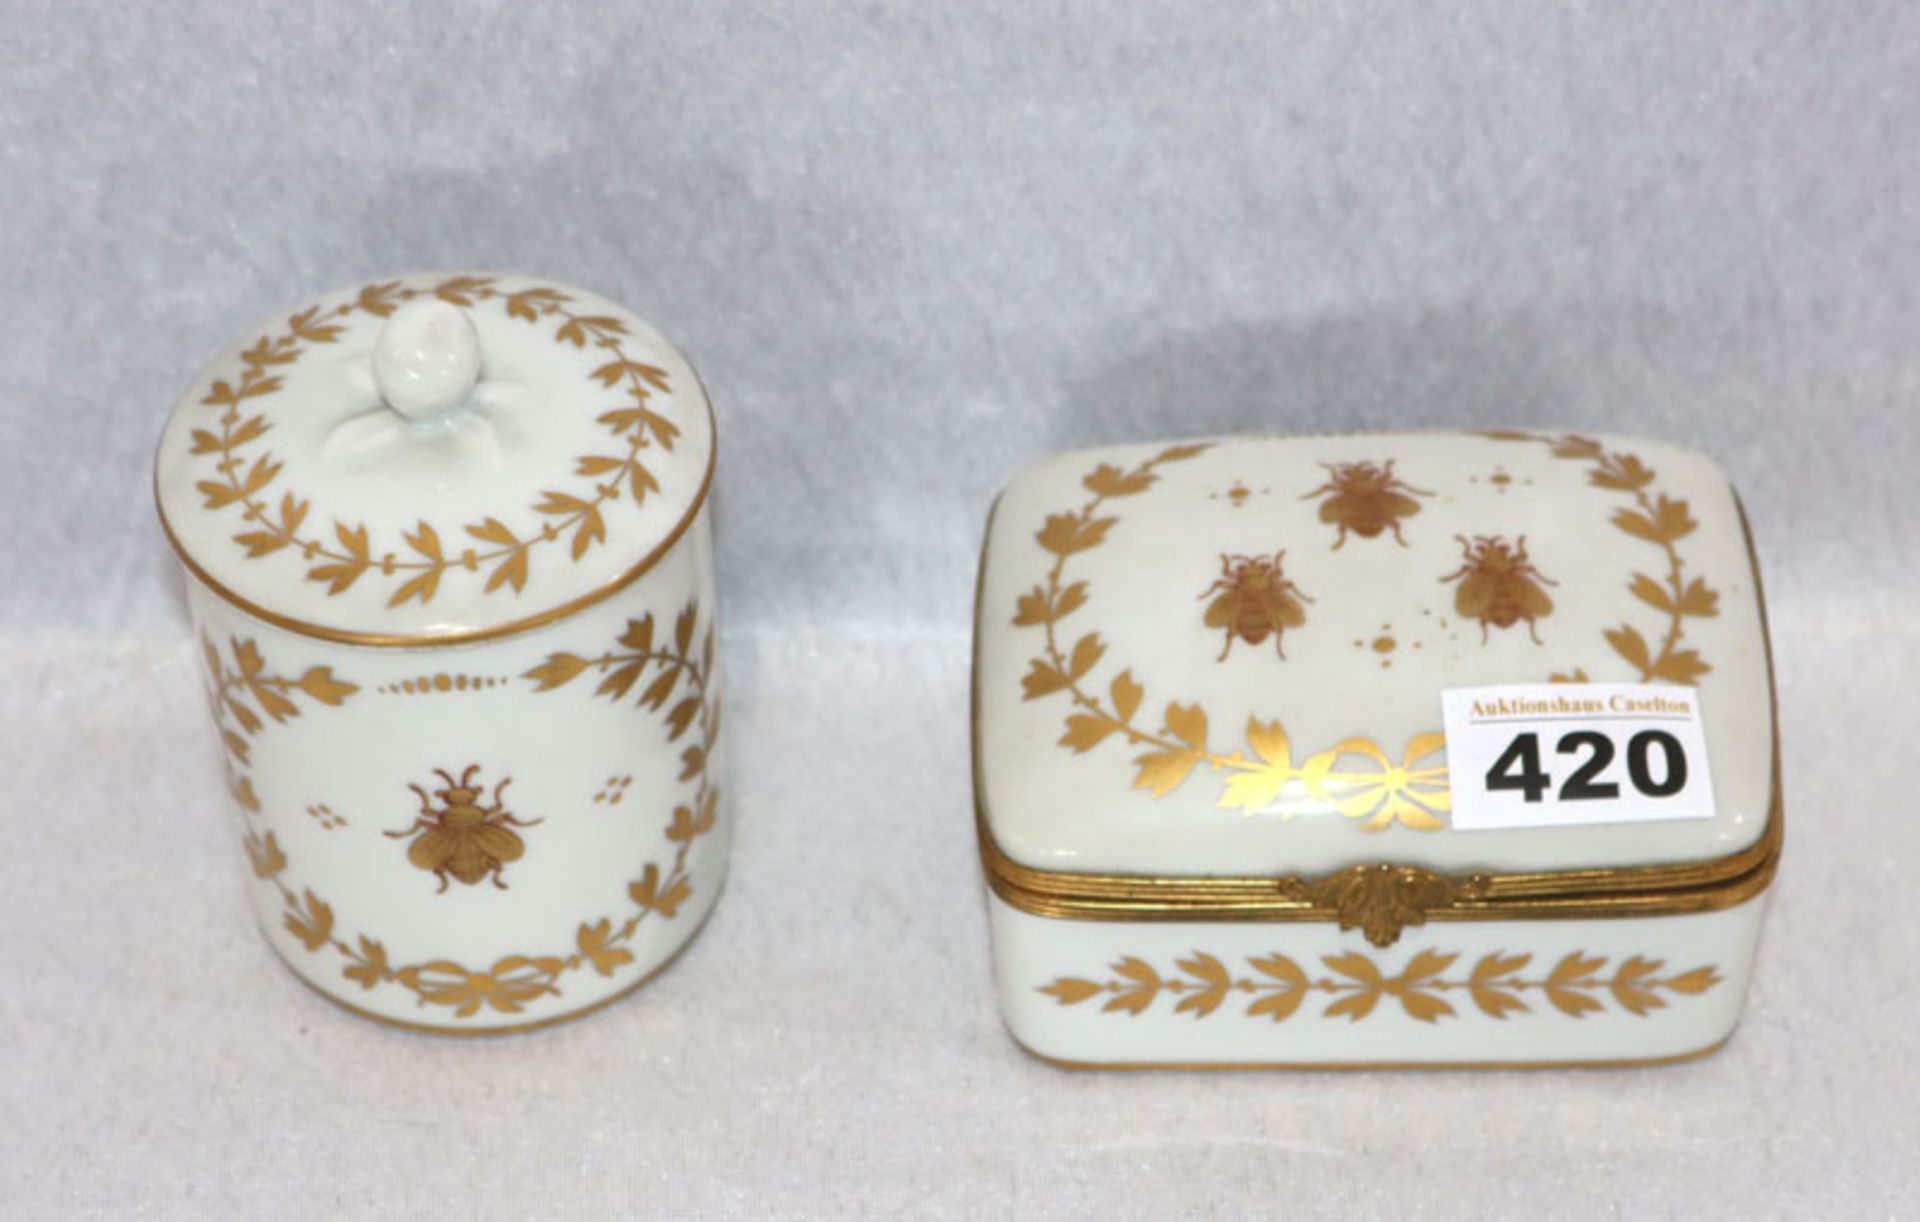 2 Porzellan Deckeldosen in verschiedenen Formen mit Käfer- und Golddekor, H 6/11 cm, teils